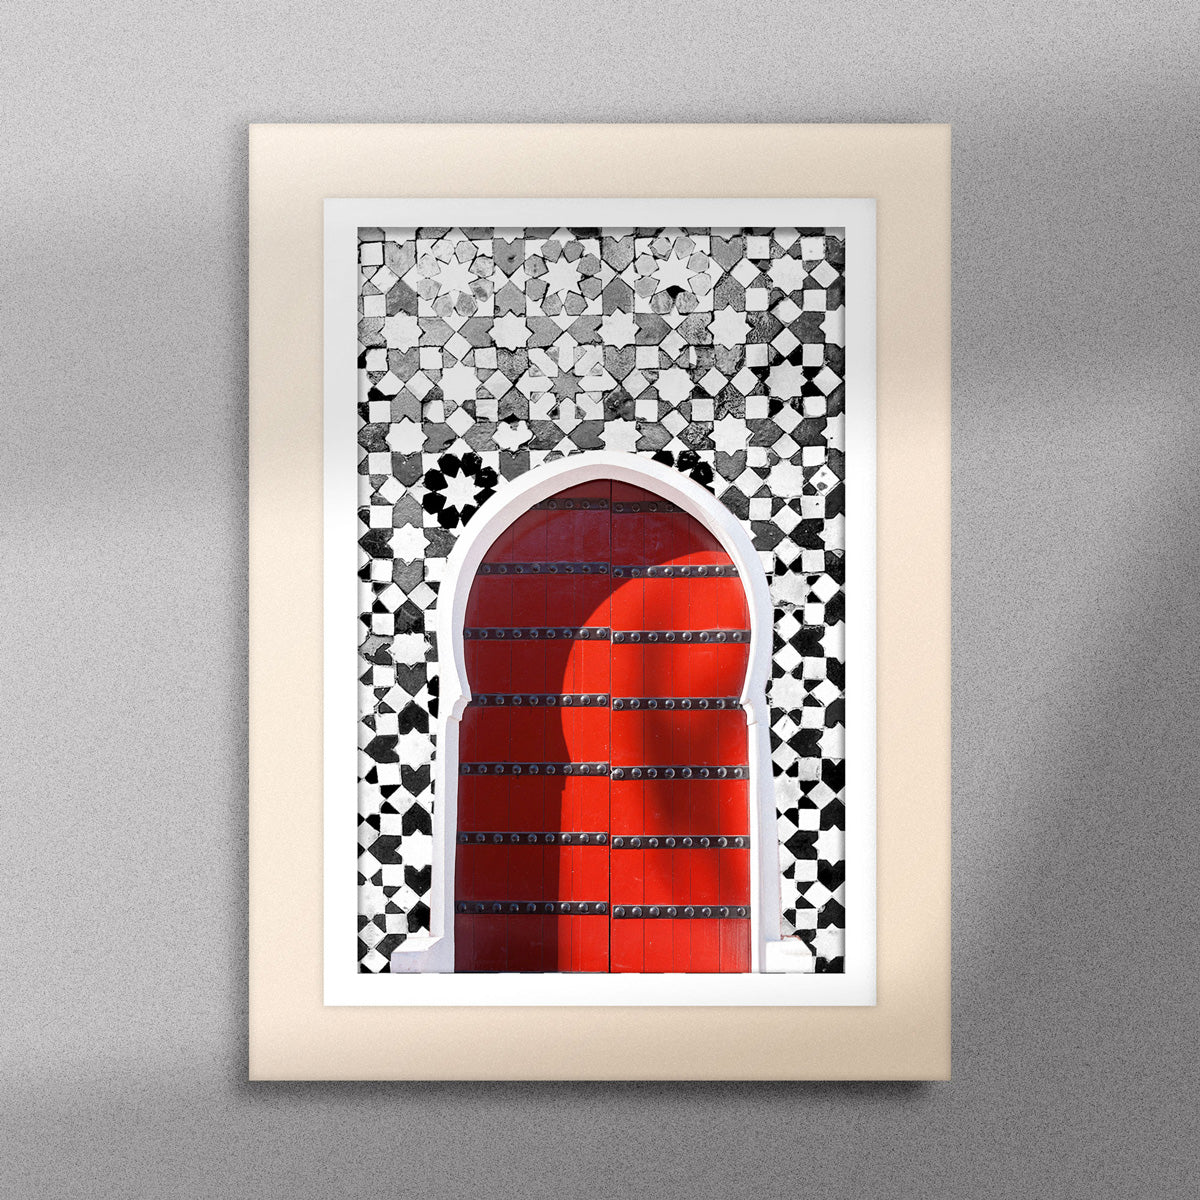 Tableau décoratif d'une porte marocaine en rouge, sur un fond de zellige marocain en noir et blanc, encadré dans un cadre en bois - Format A5